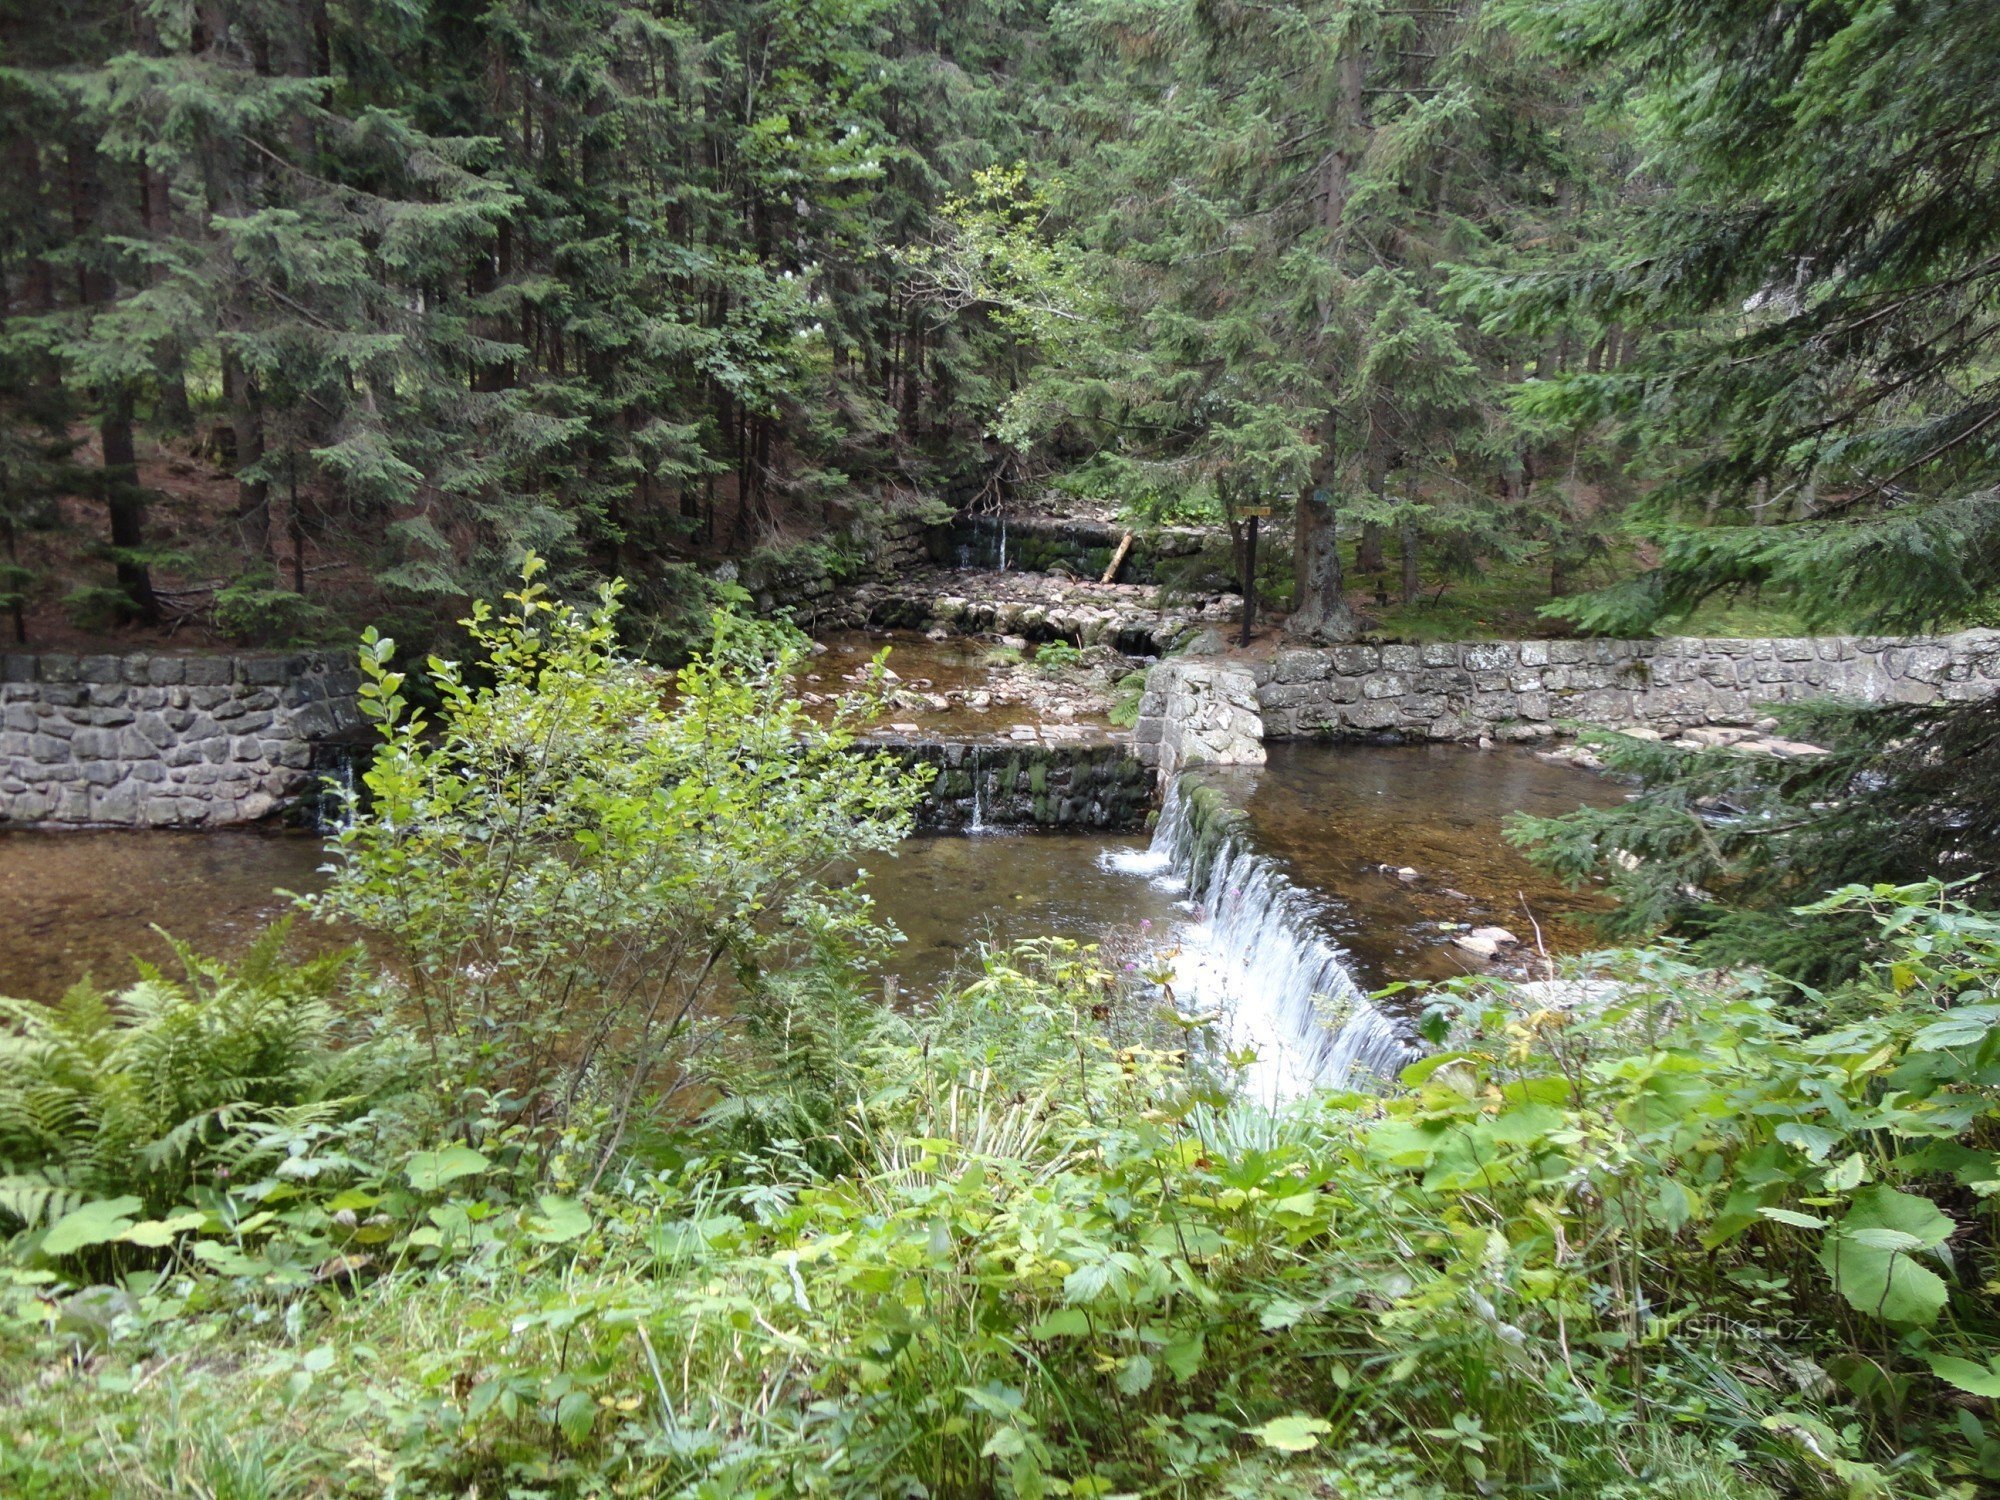 the confluence of Modrý potok and Úpa